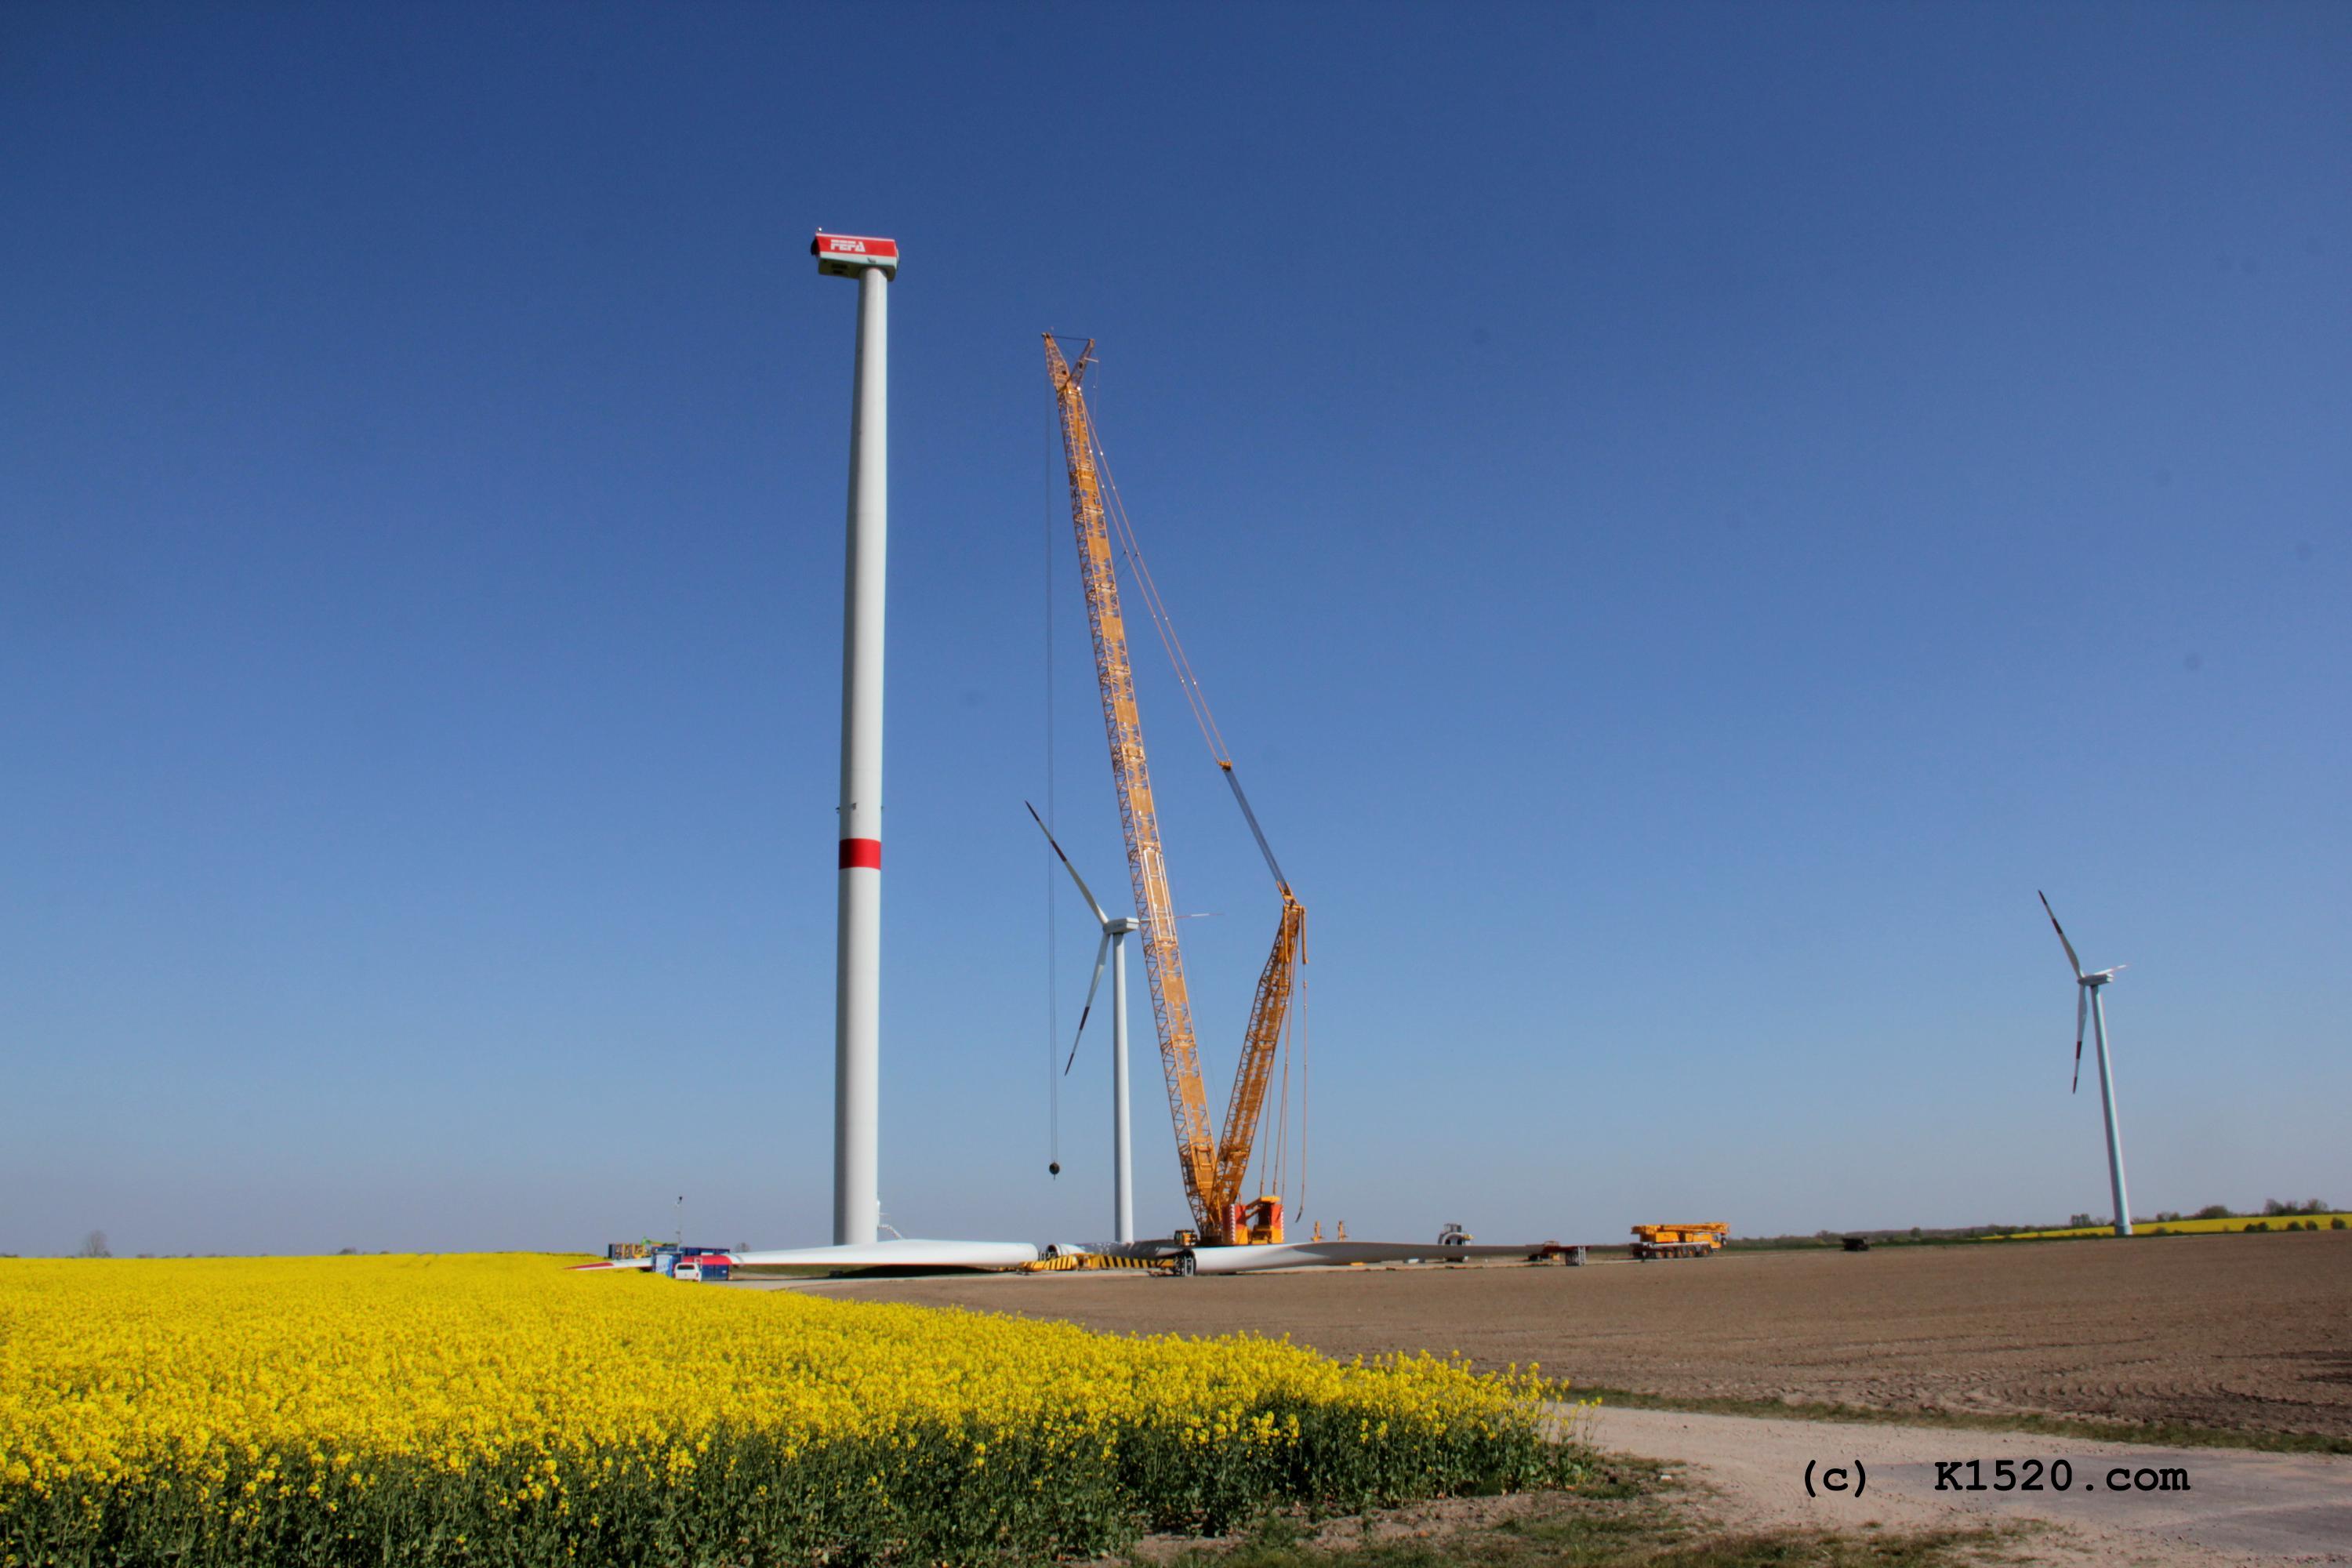 Reparatur Windräder im Windpark Arneburg/Elbe 04/2020,
  Kraneinsatz, Größenvergleich gelber Kran, unten rechts